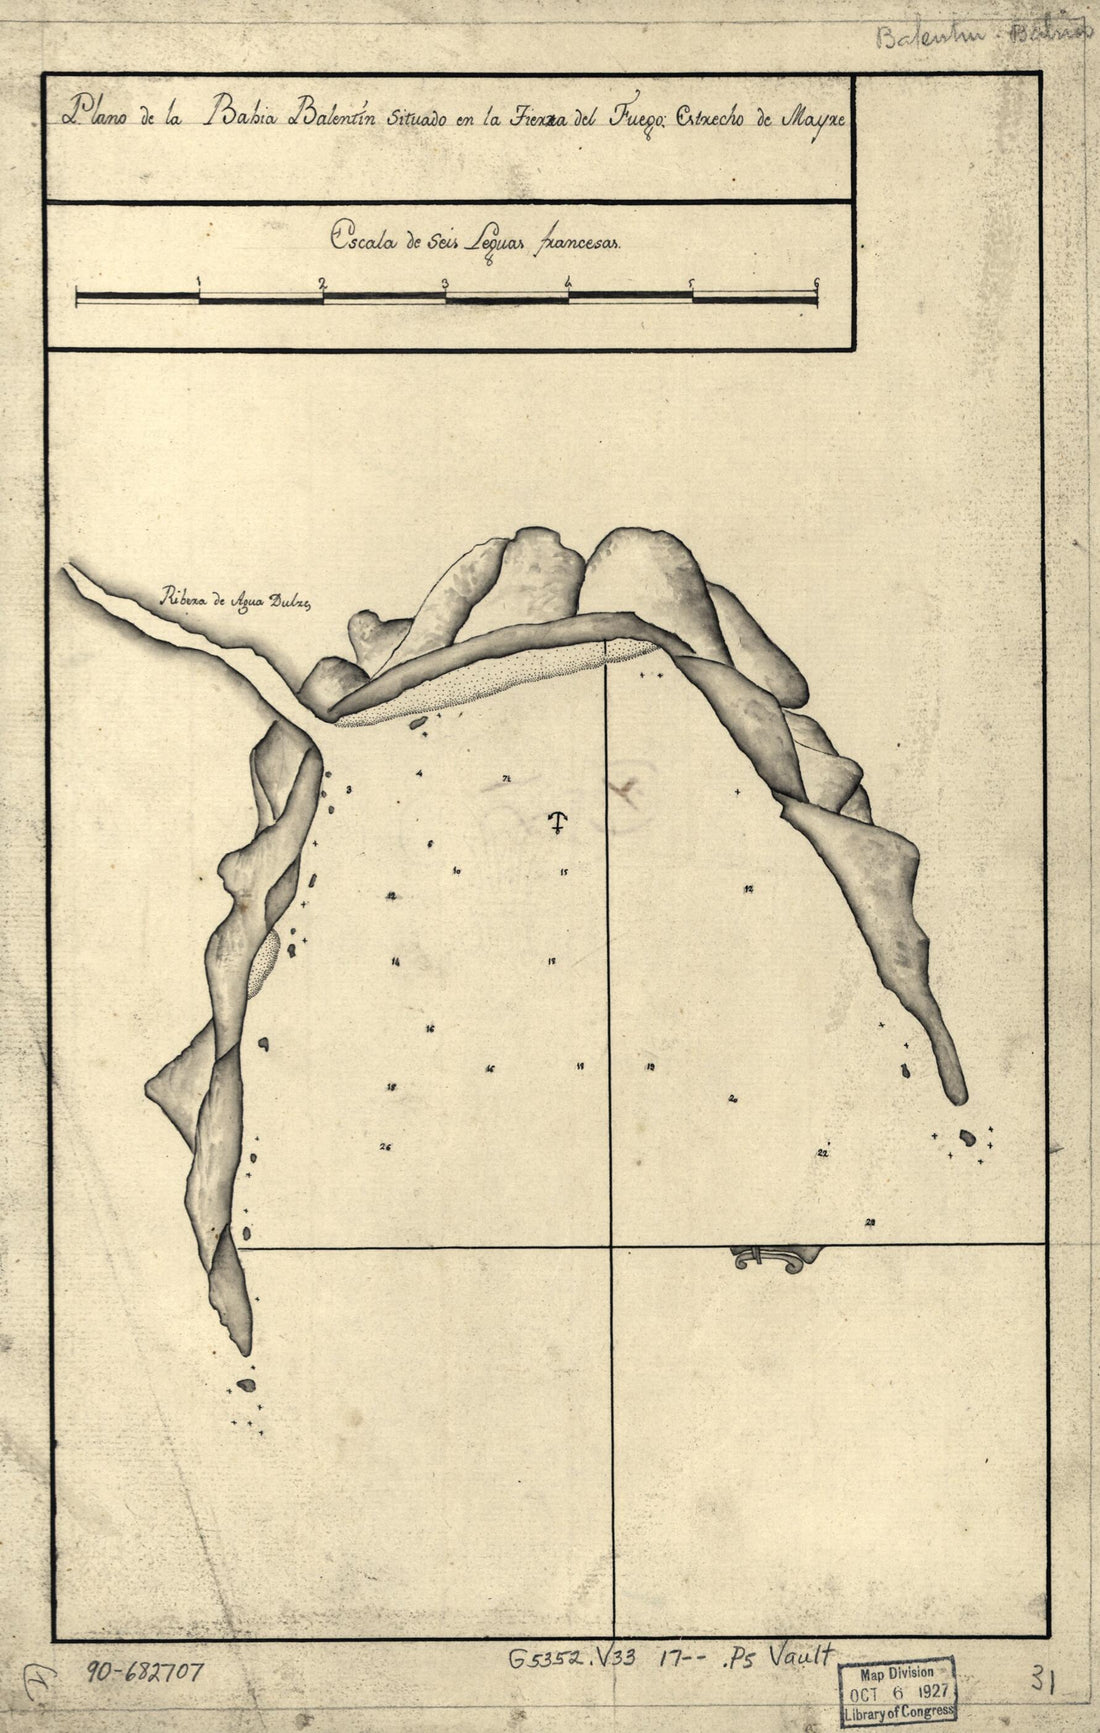 This old map of Plano De La Bahía Balentín Situado En La Tierra Del Fuego, Estrecho De Mayre from 1700 was created by  in 1700